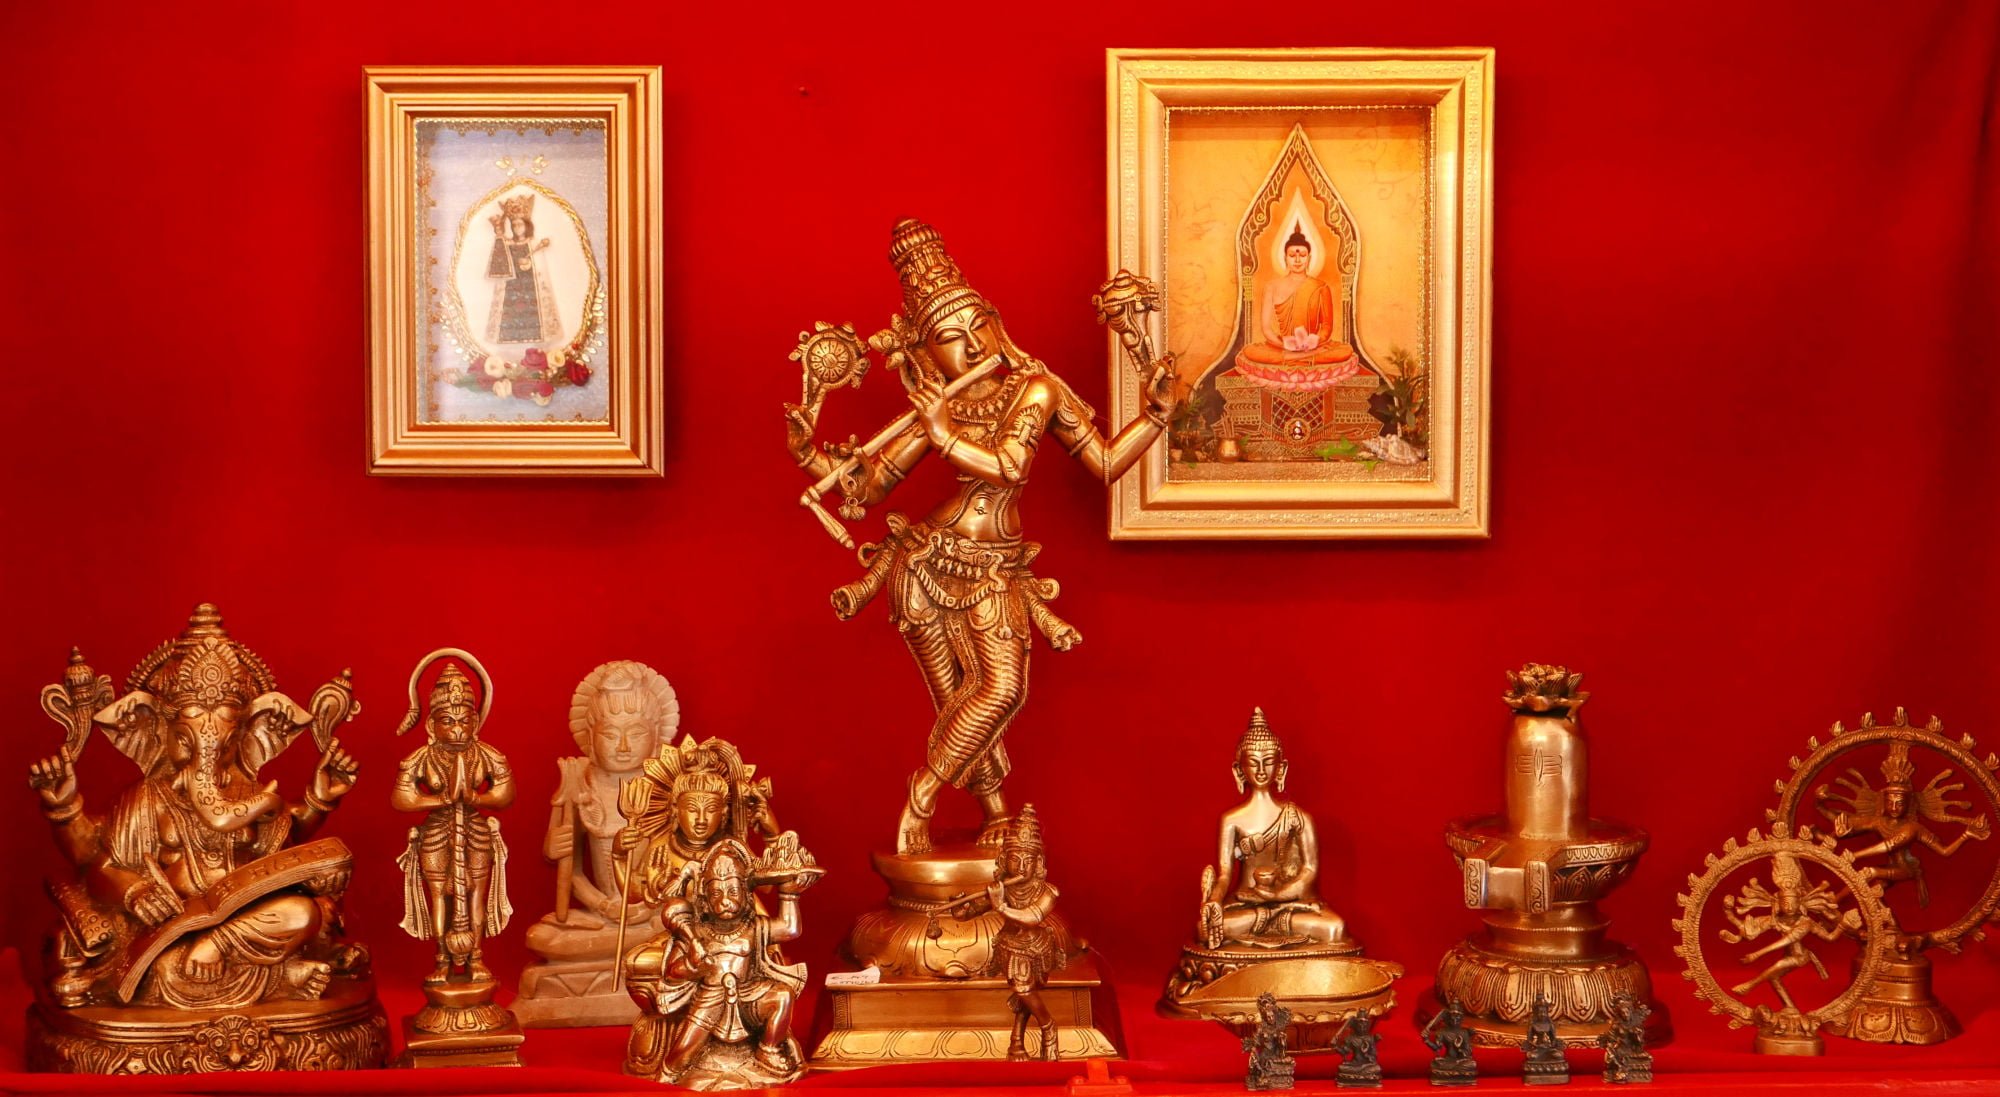 Indische Murtis - Darstellungen göttlicher Kräfte, die im Menschen ruhen